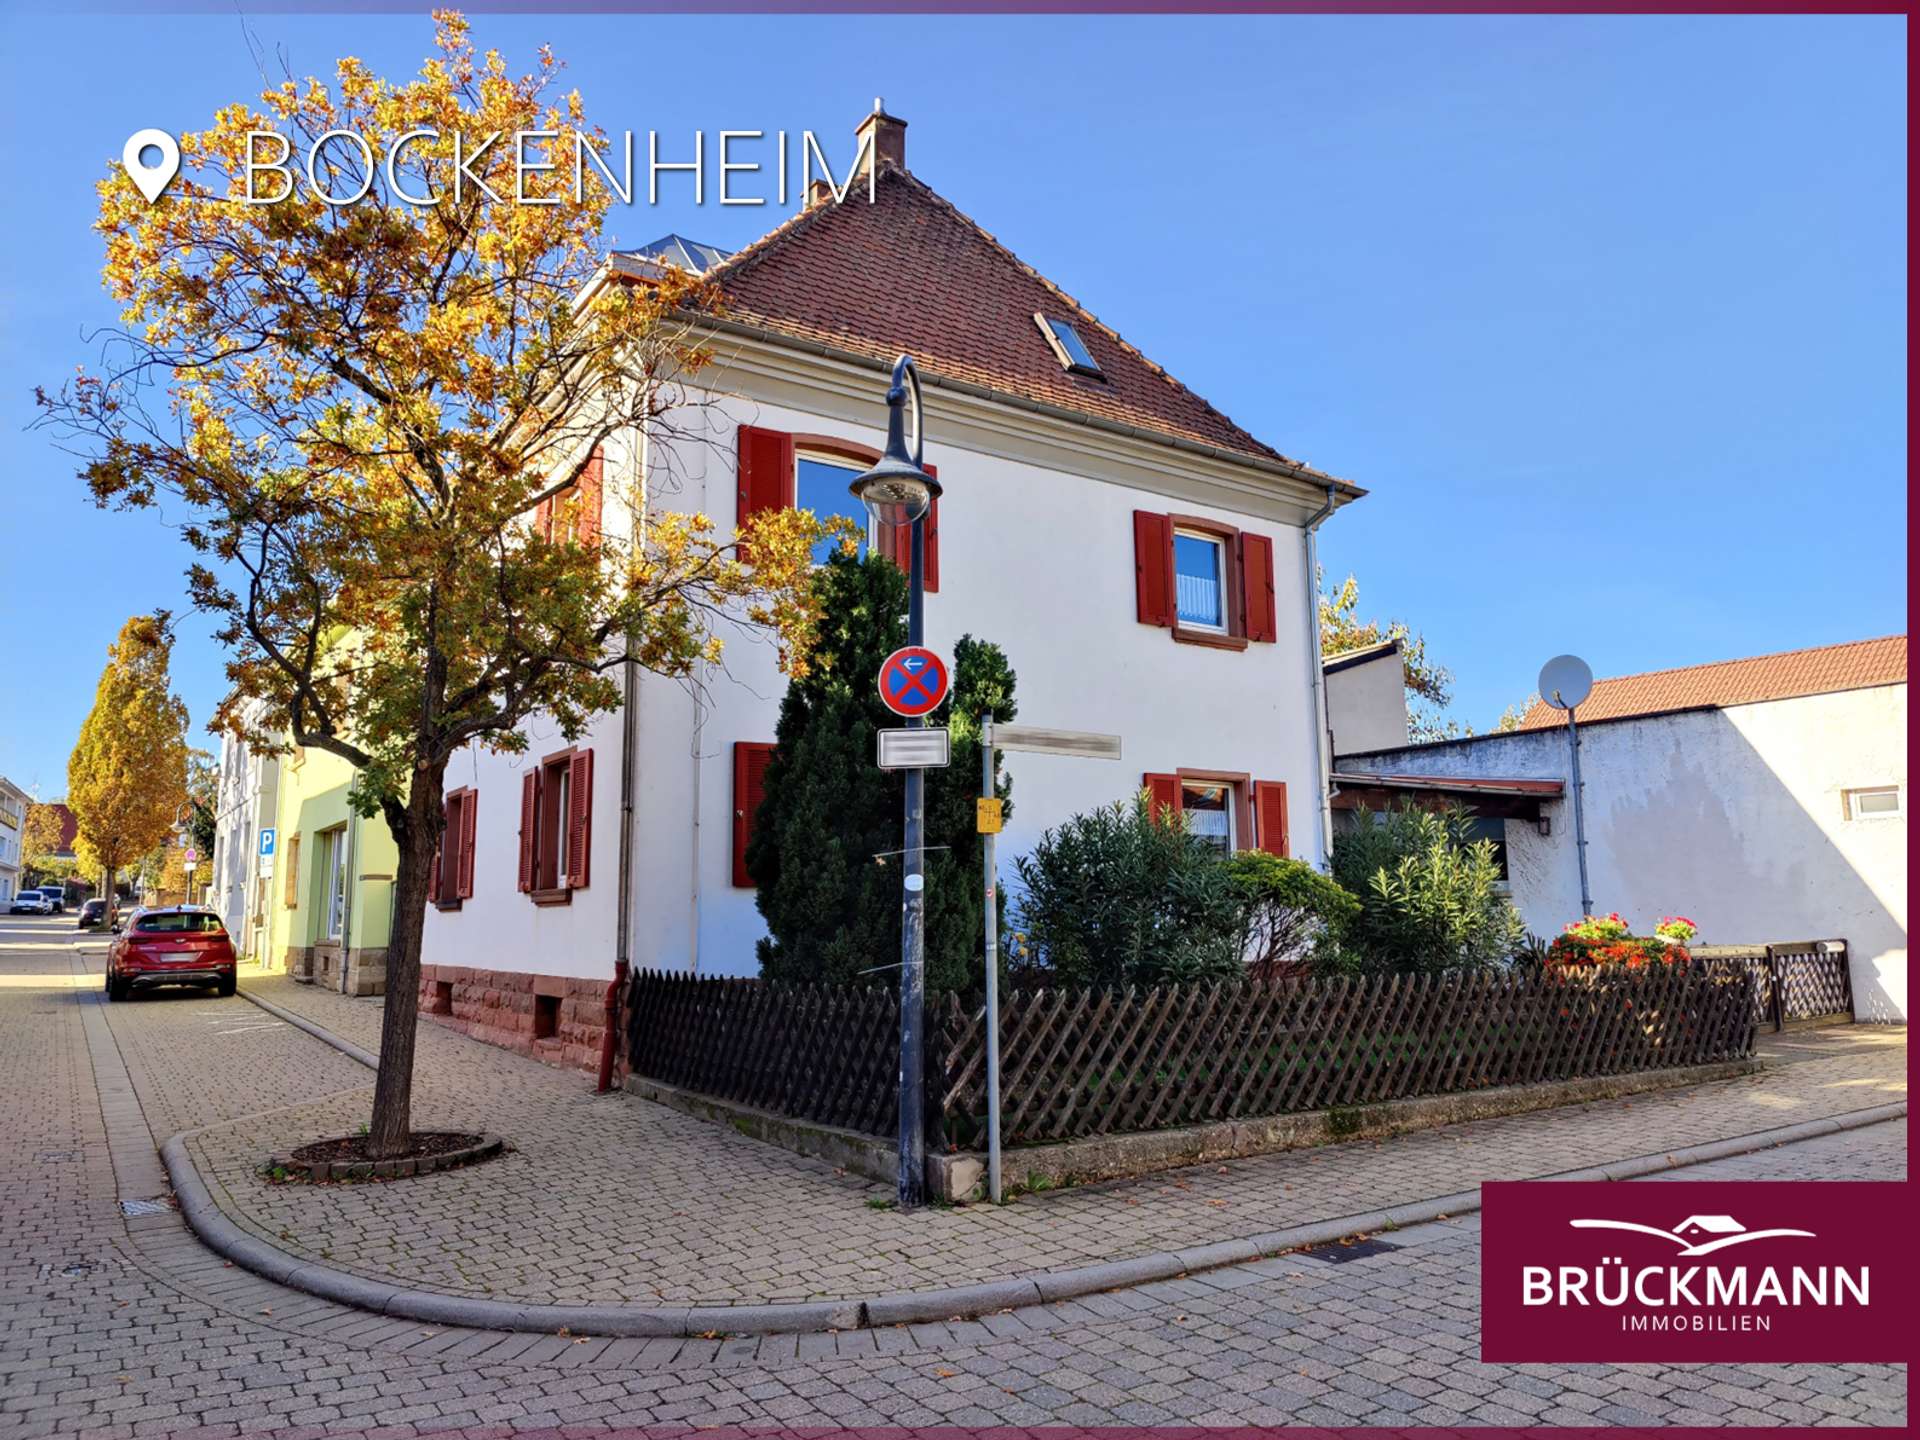 Charmantes Wohnhaus mit Innenhof, Vorgarten & Ladengeschäft im Winzerdorf Bockenheim!, 67278 Bockenheim, Einfamilienhaus